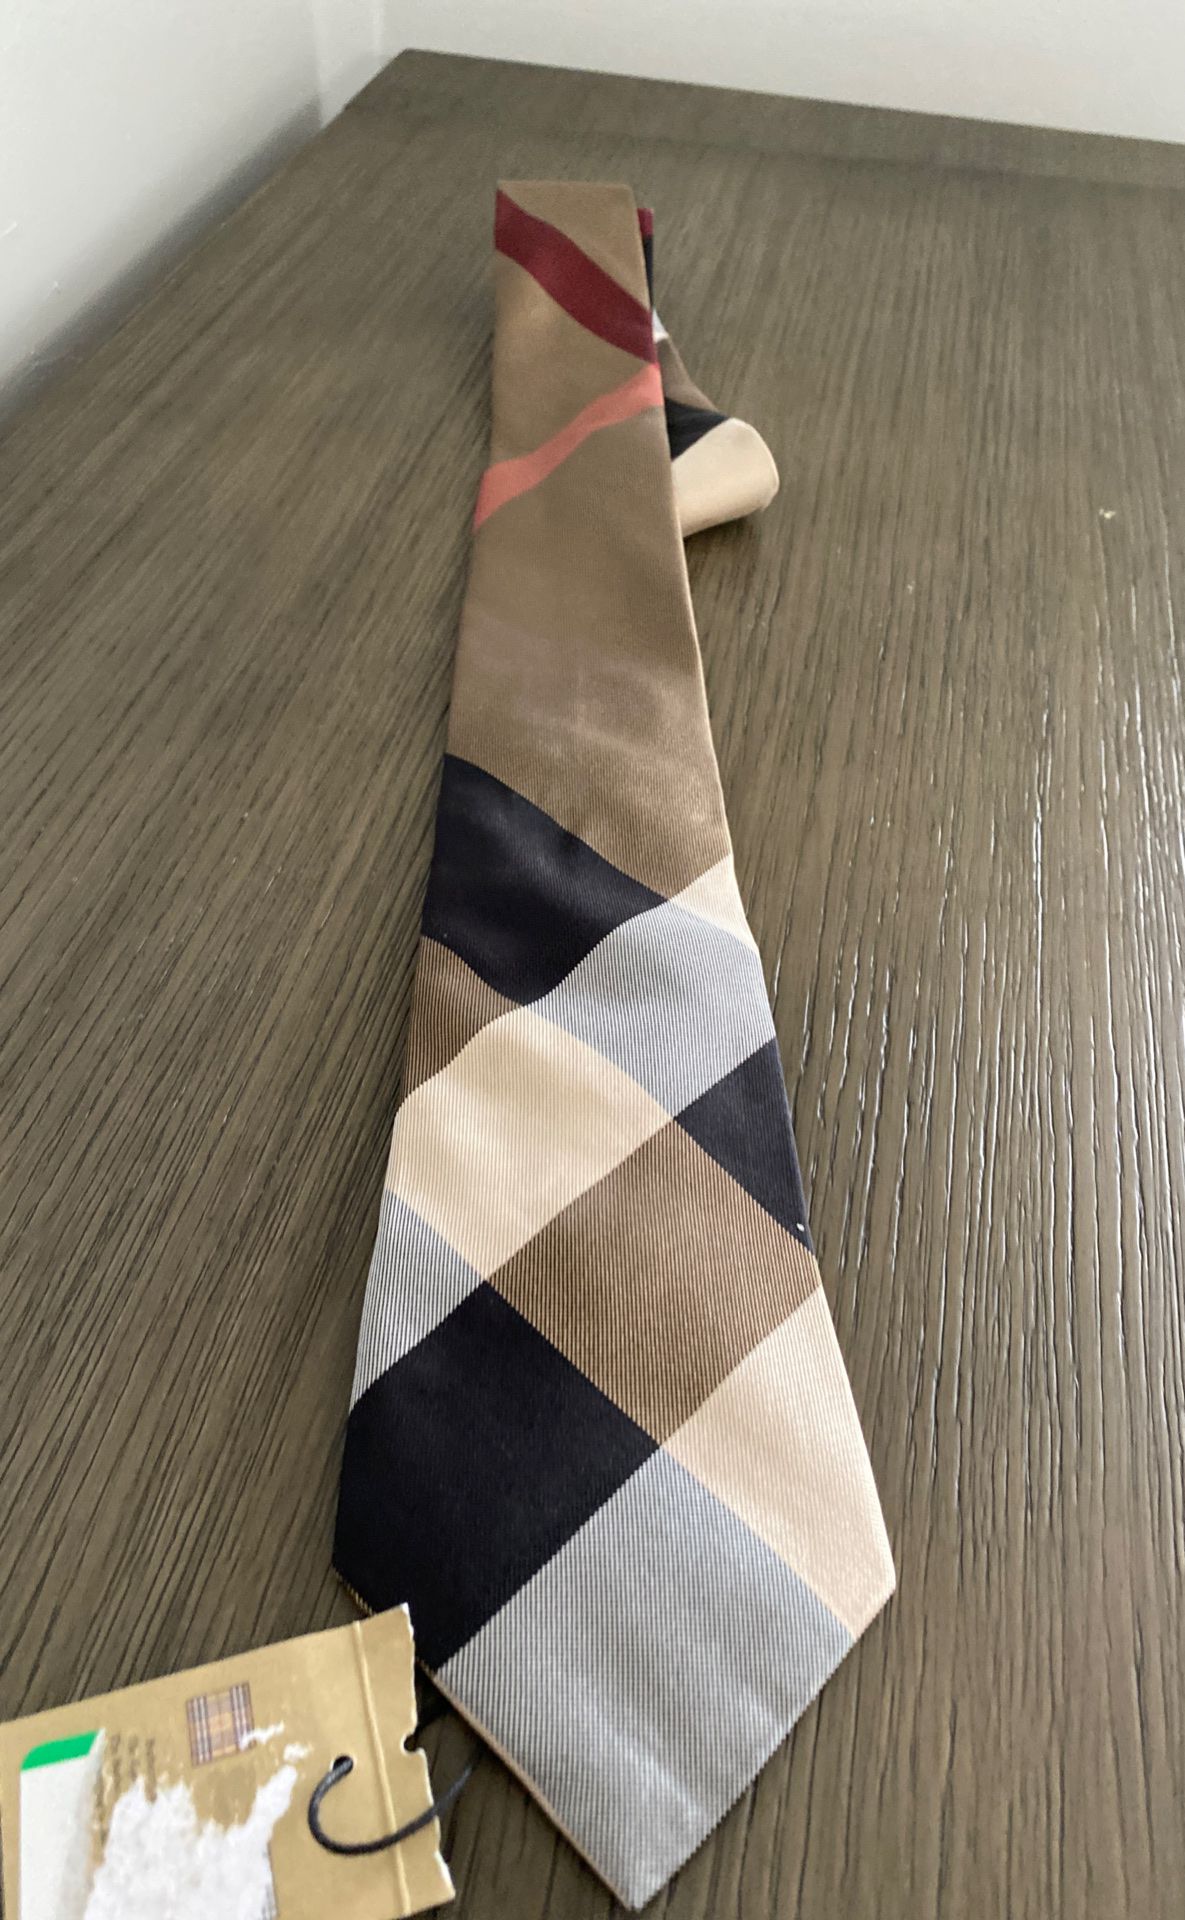 New authentic men’s Burberry tie